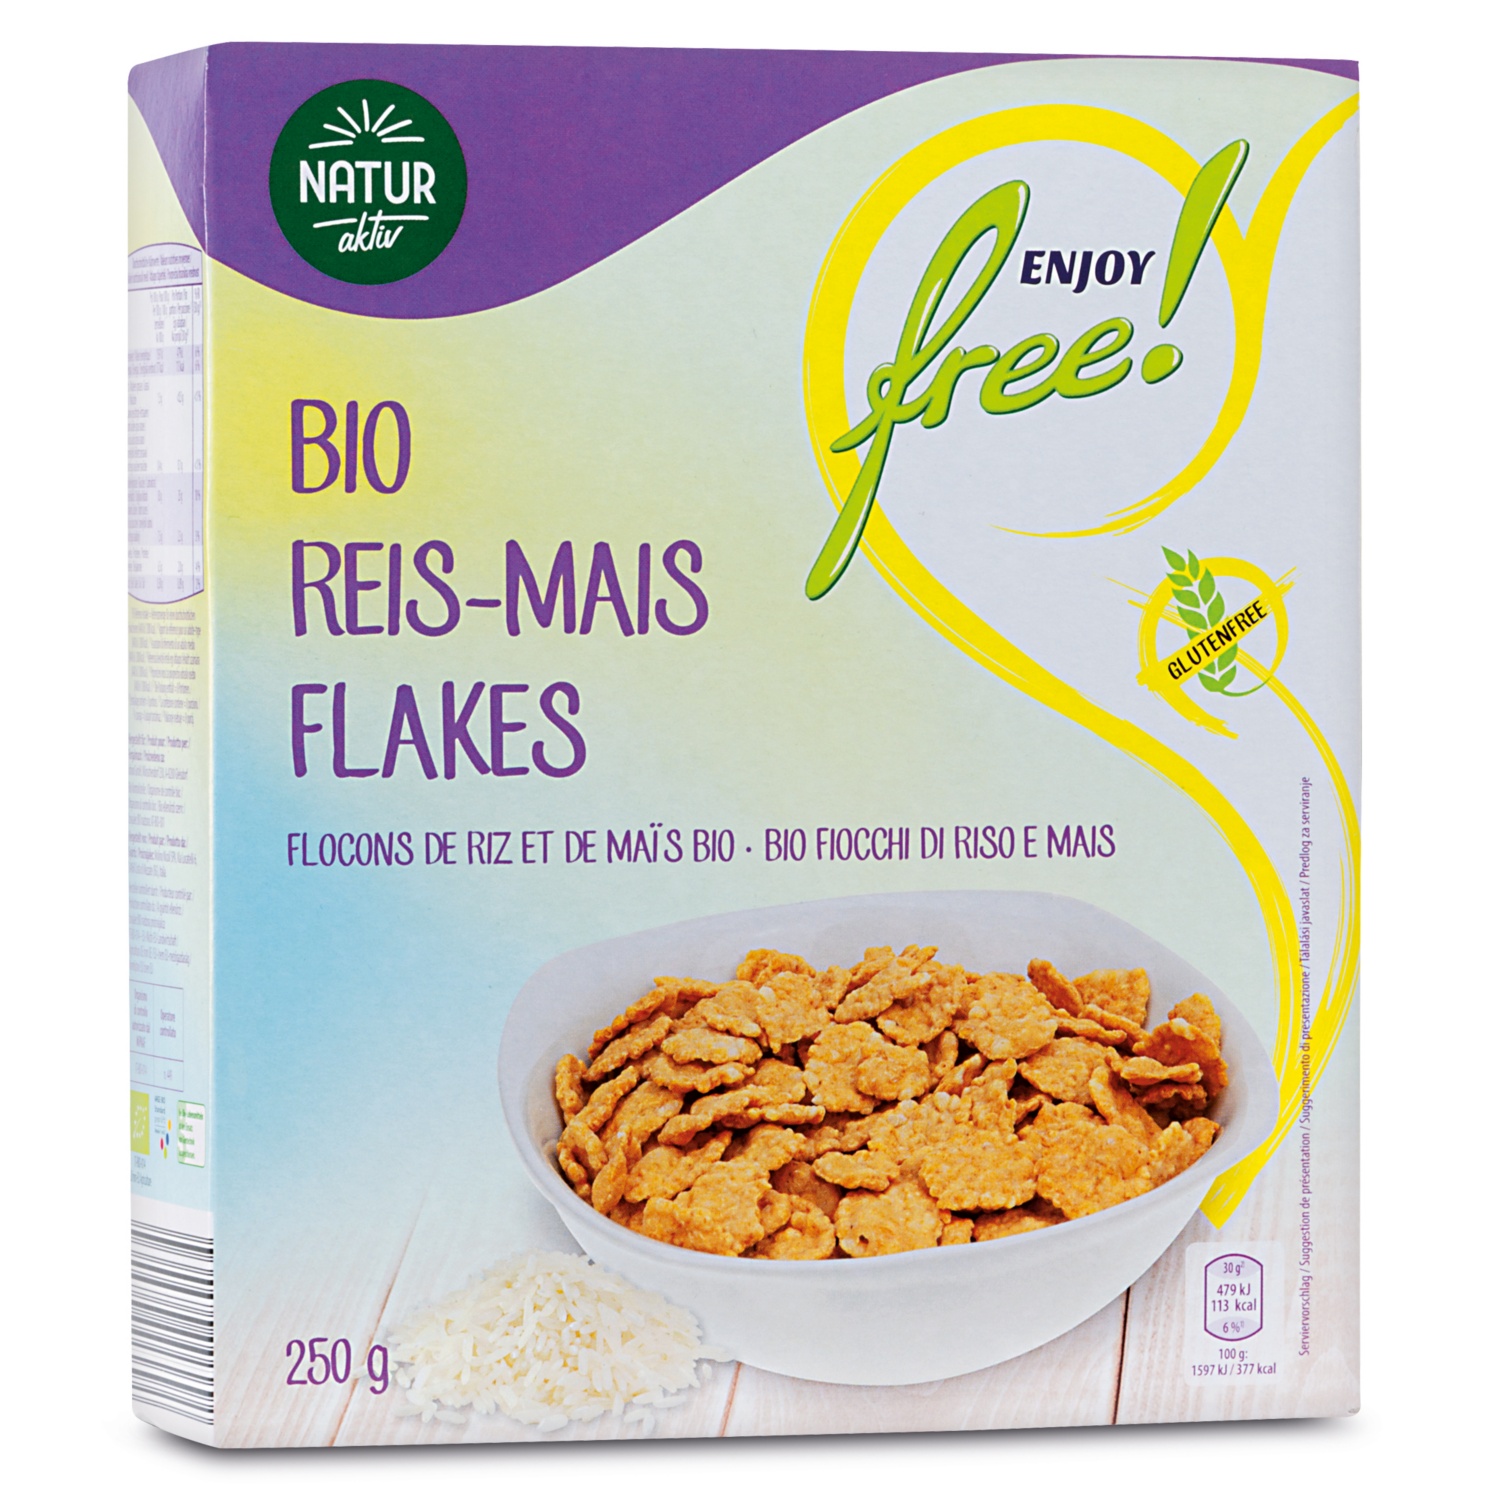 ENJOY FREE! BIO-Cerealien, glutenfrei, Reis Mais Flakes